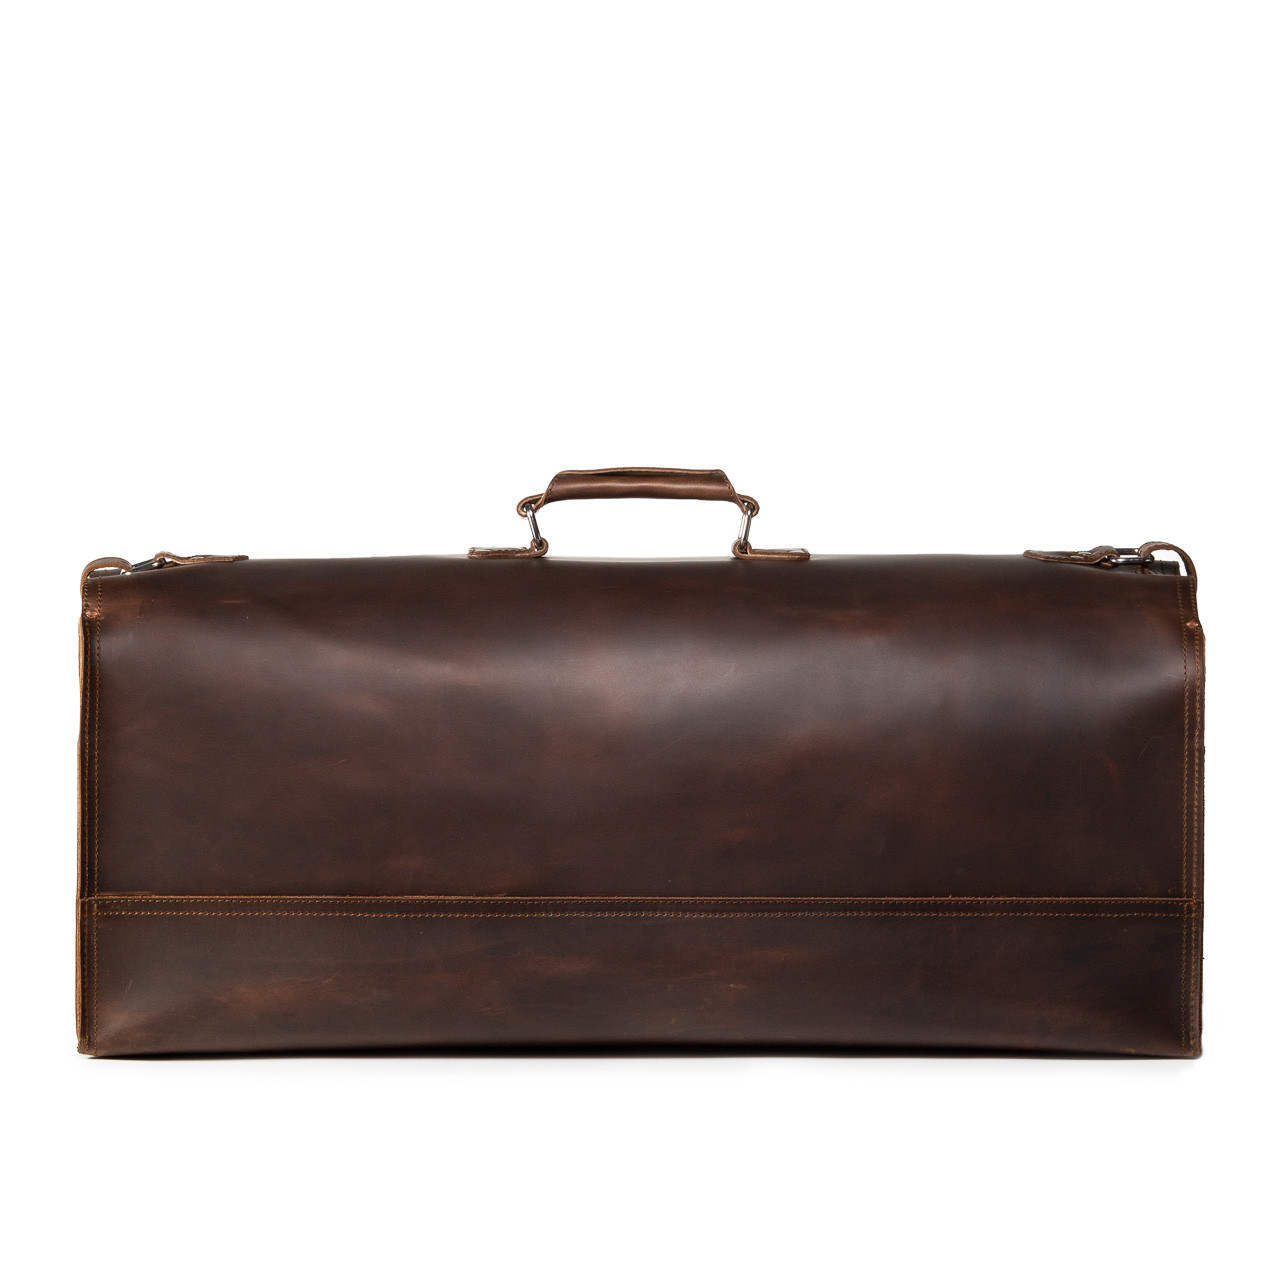 Men's Travel Duffel Bag CHENFANS Leather Large